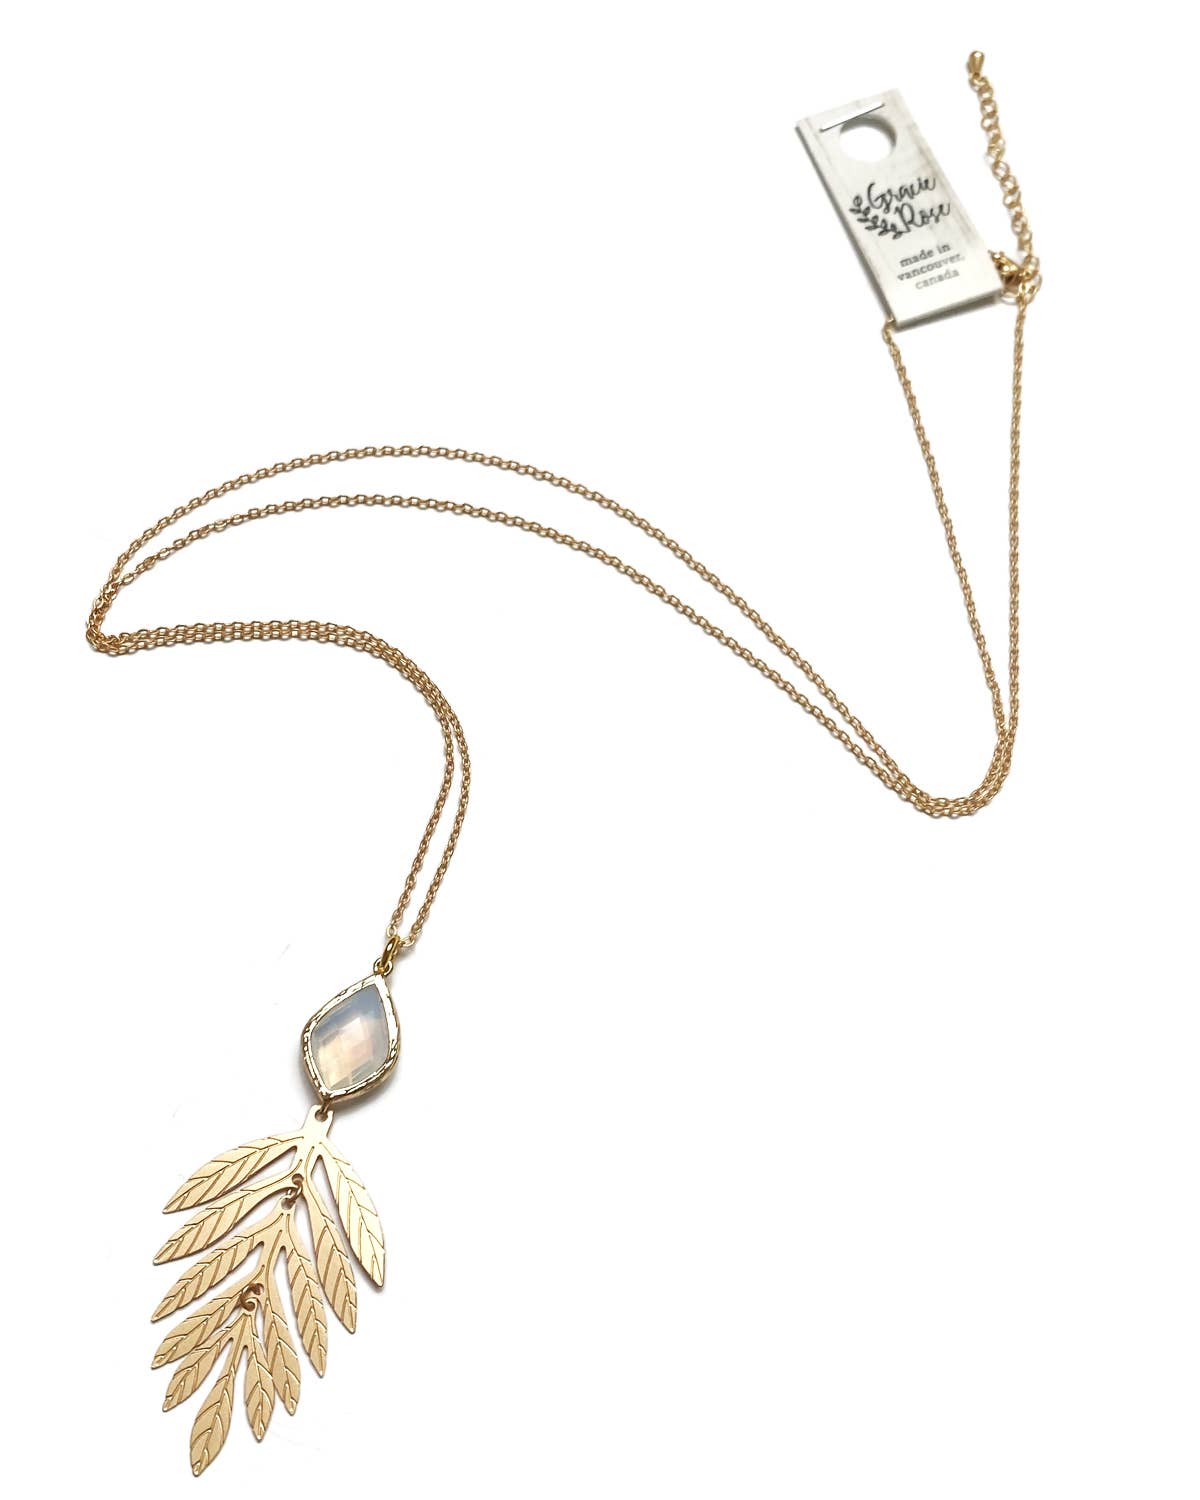 Gracie Rose Designs - Romantic Nature Matte Gold Opal Glass Leaf Pendant Necklace